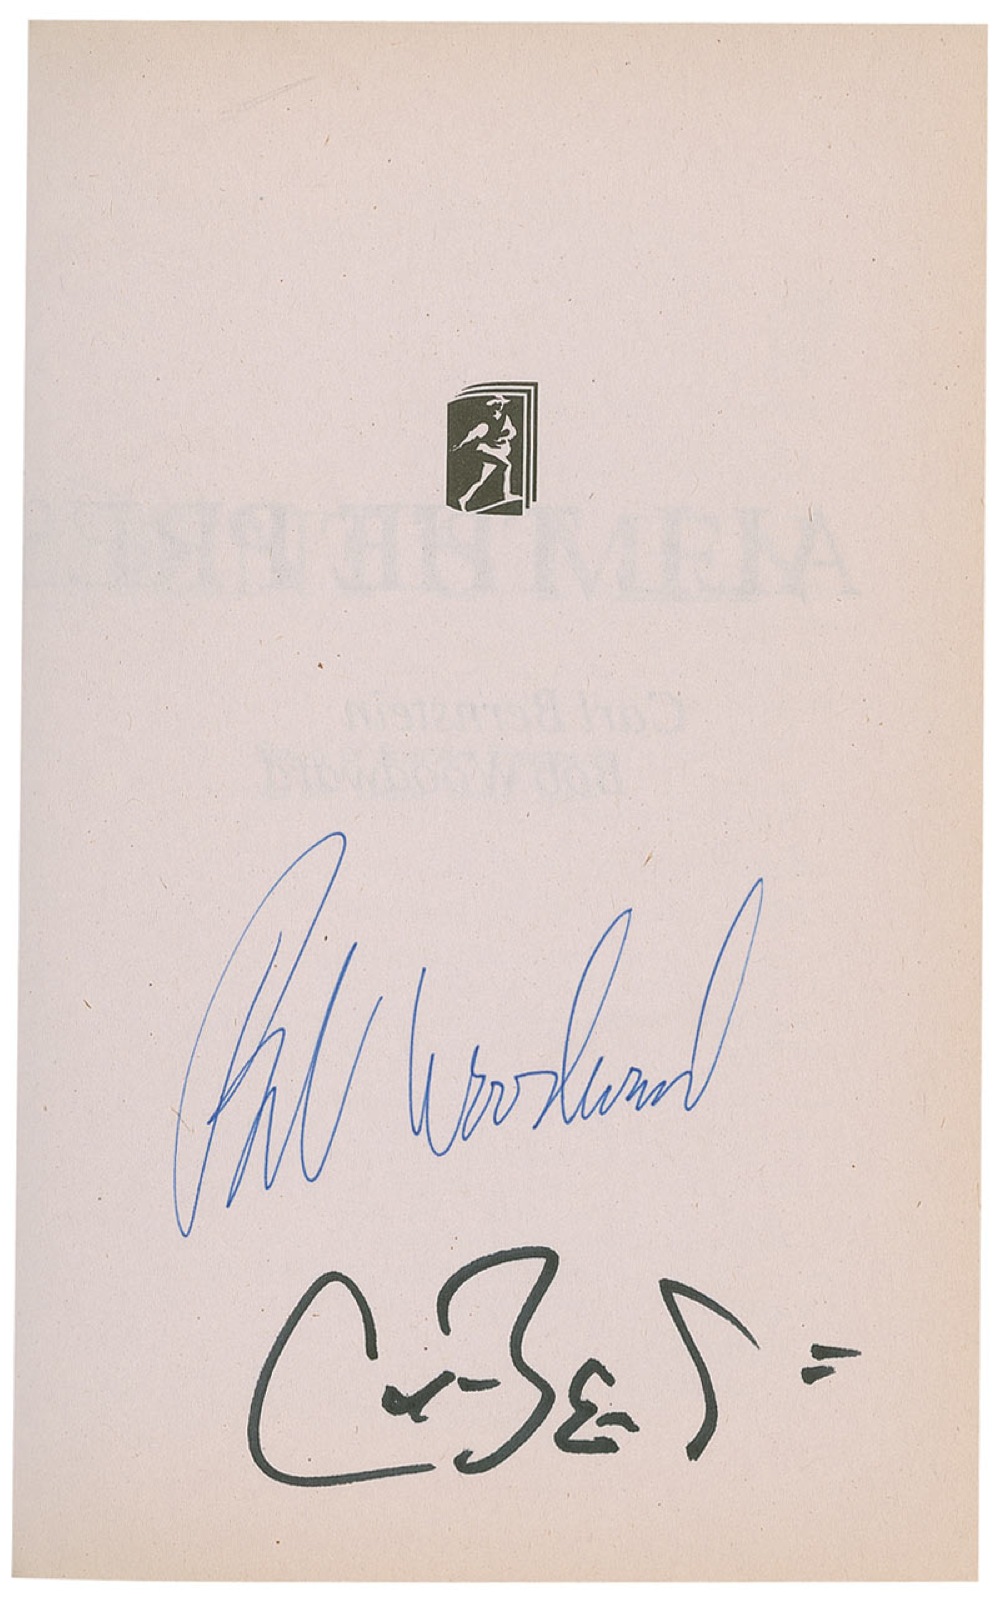 Lot #335 Watergate: Woodward and Bernstein